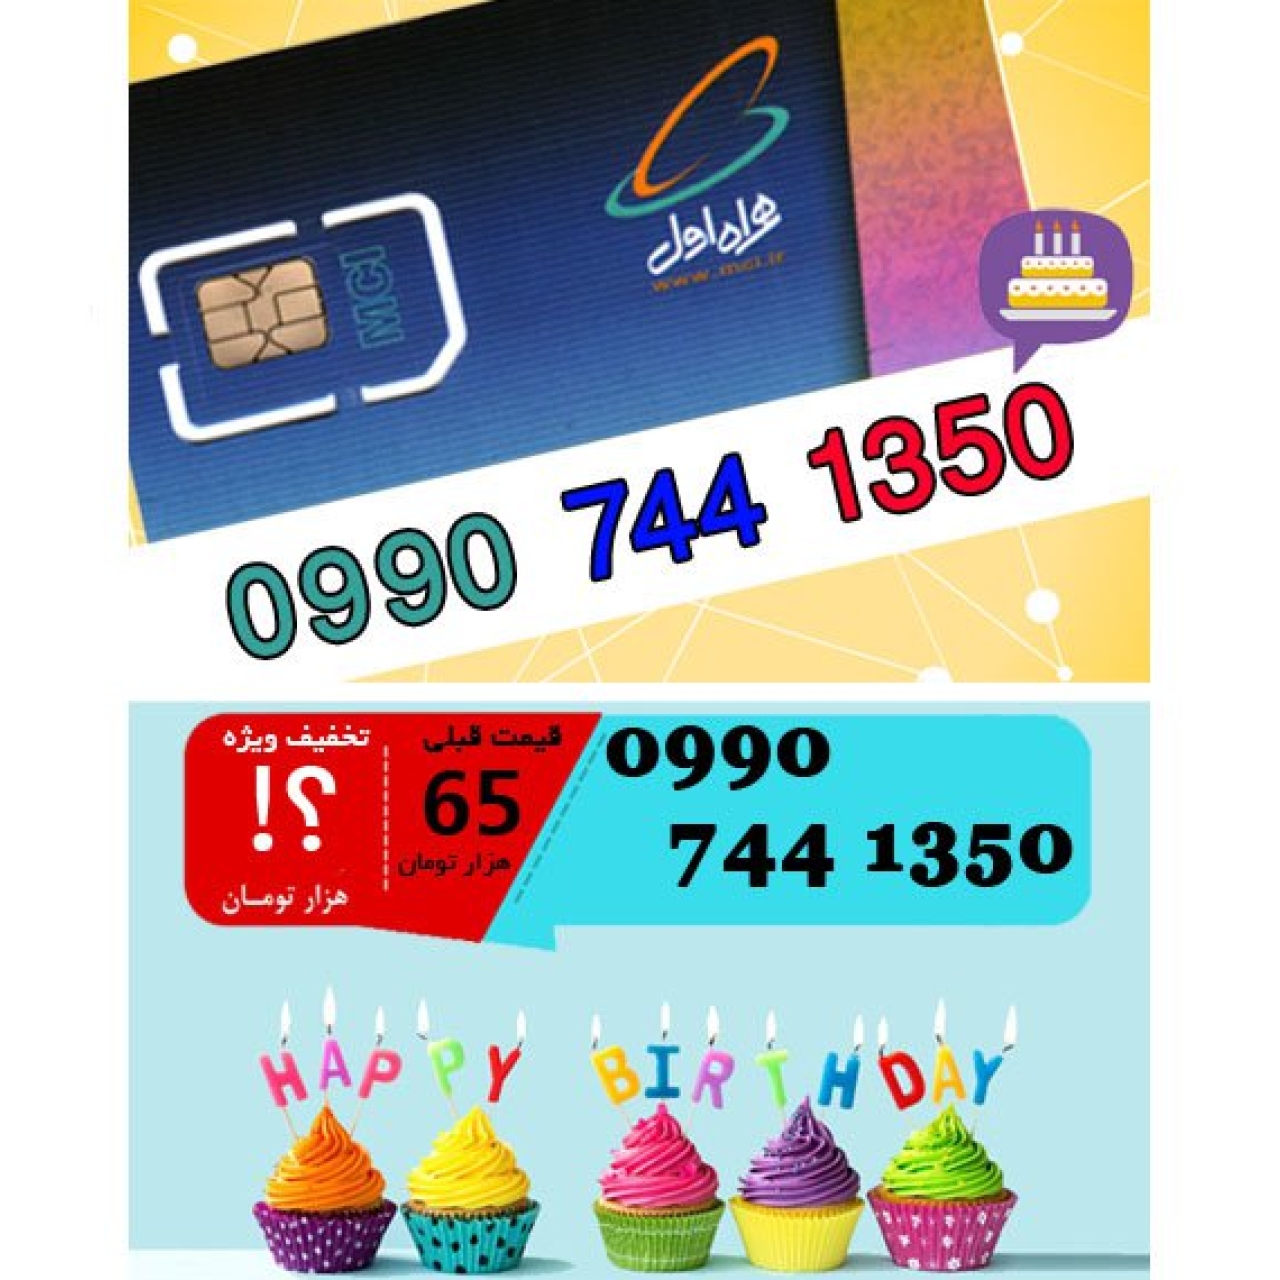 سیم کارت اعتباری همراه اول 09907441350 تاریخ تولد